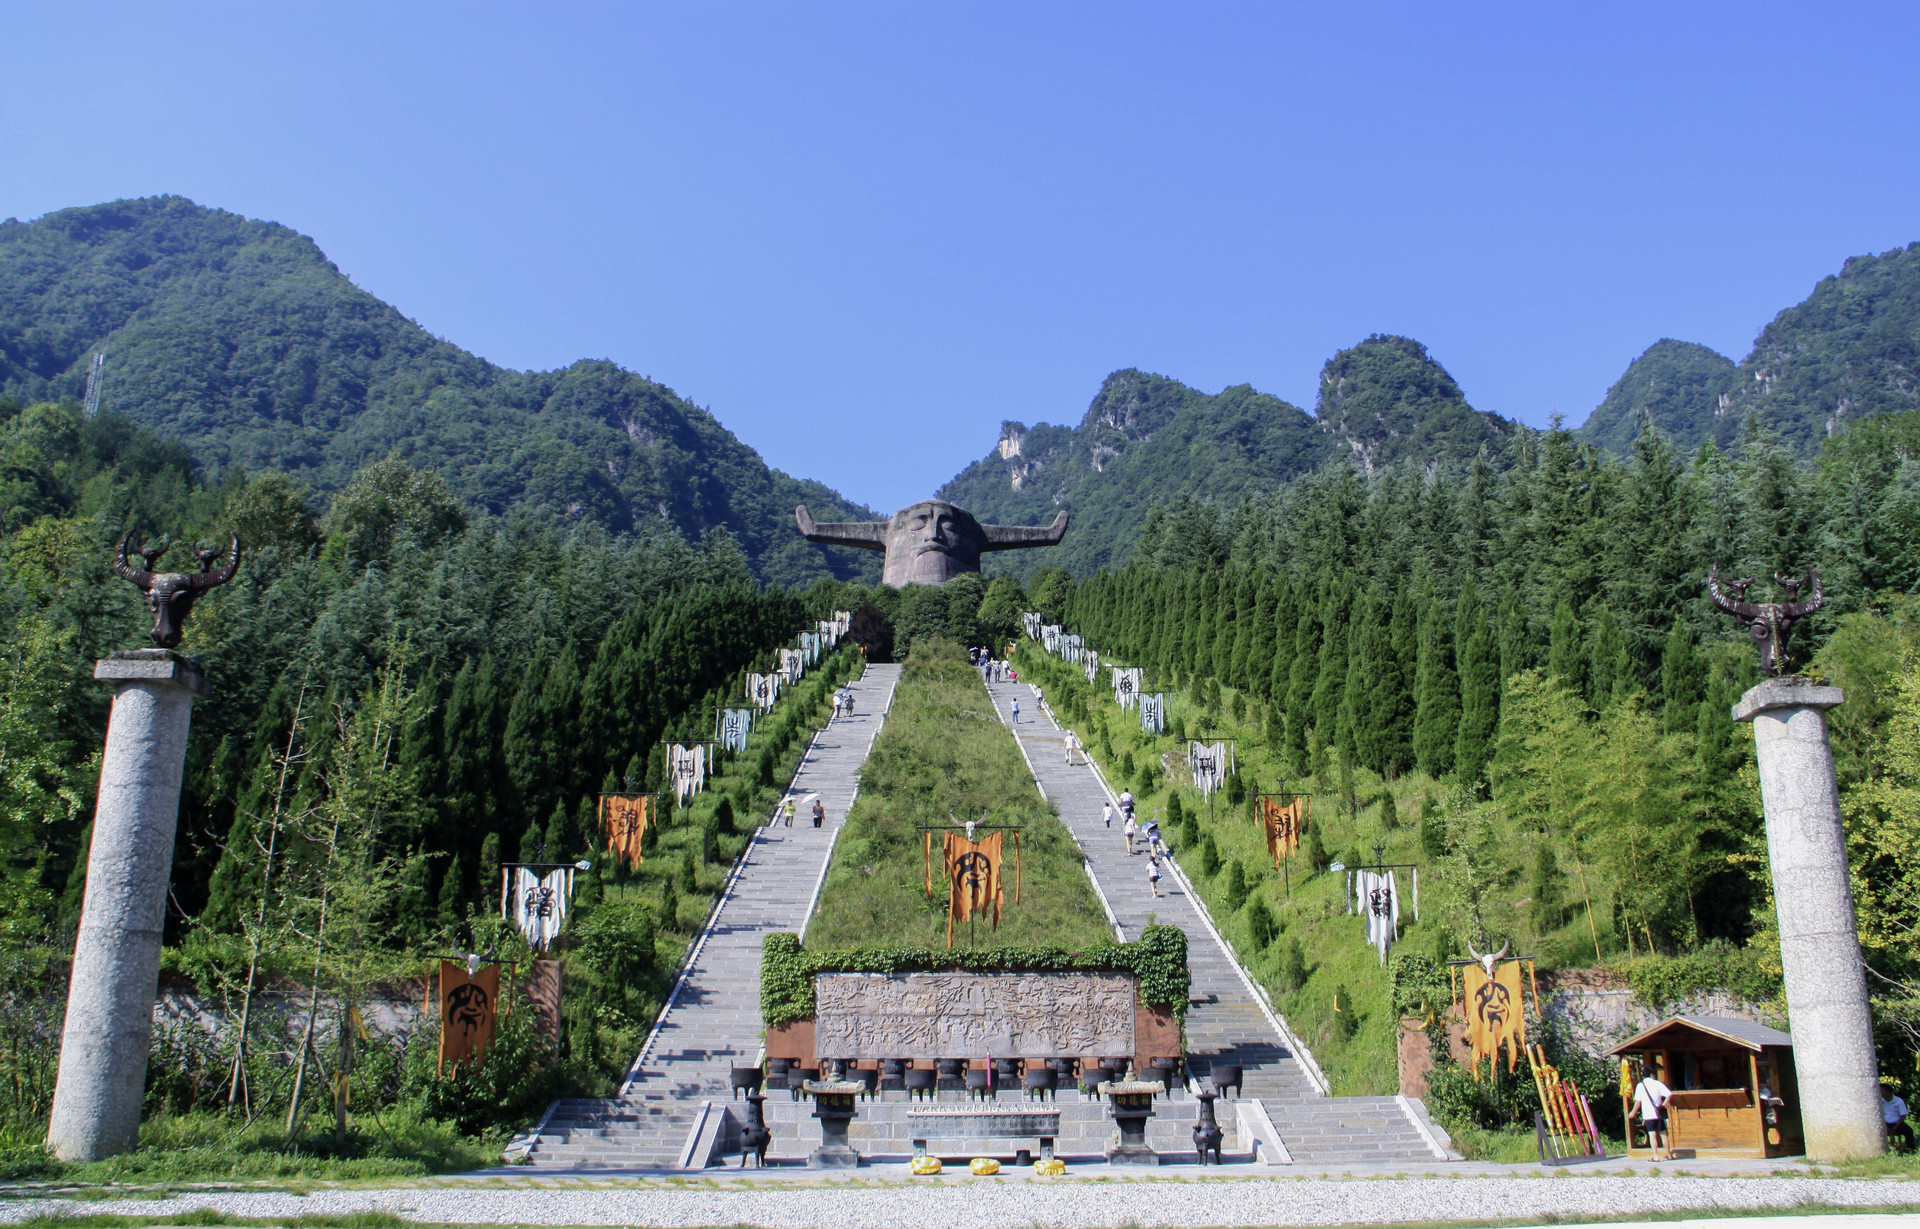 一路向西,中国的景观大道,北纬30度最美风景线--318国道总览论